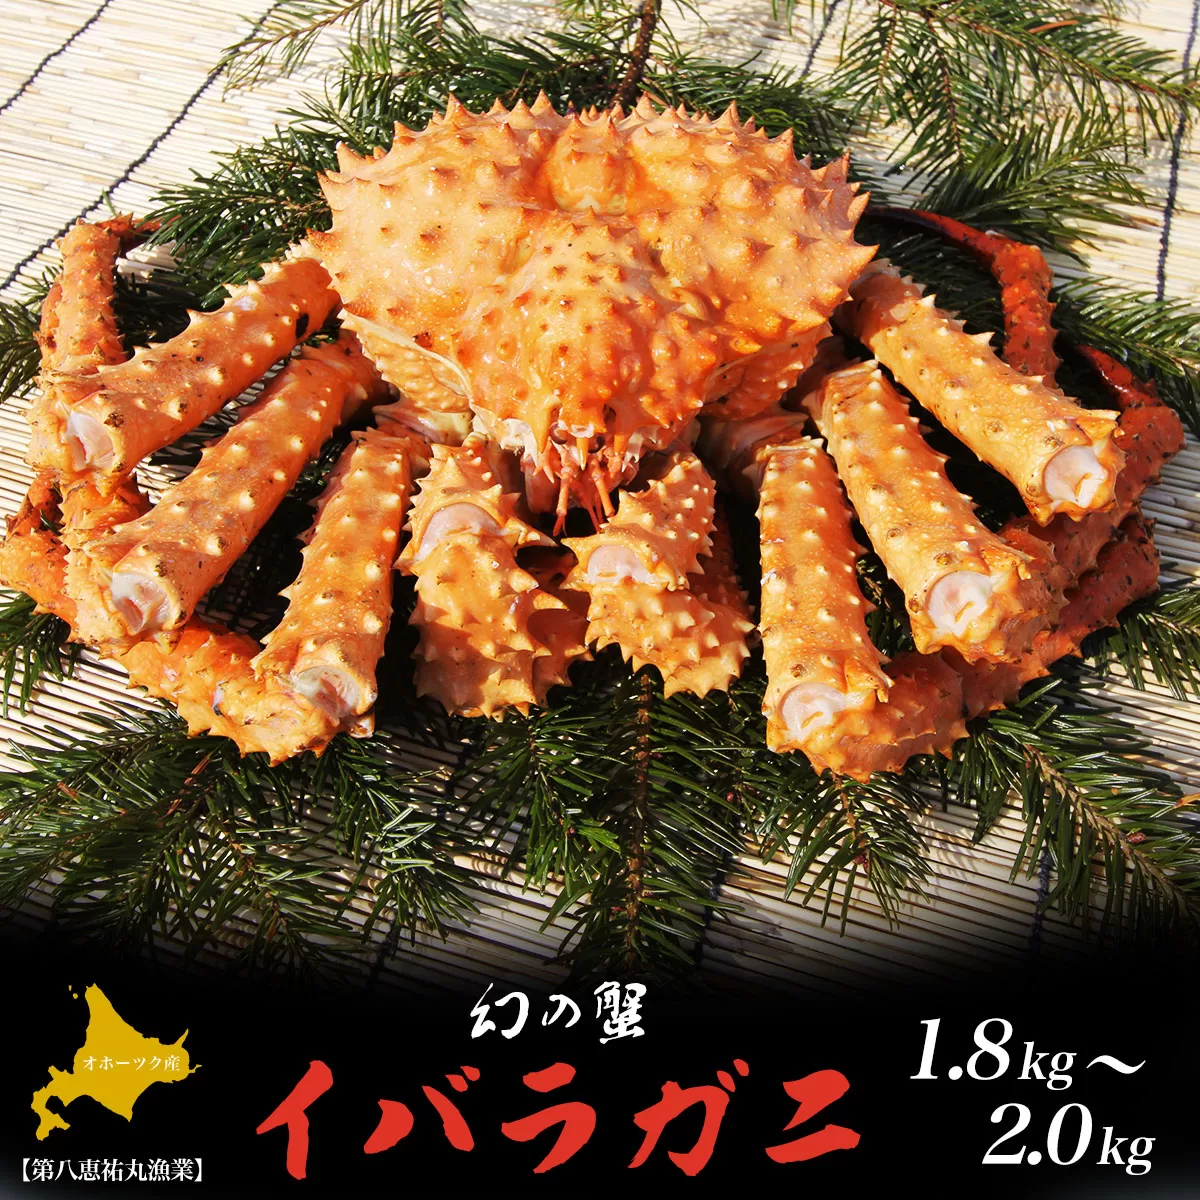 オホーツク産 幻の蟹 イバラガニ 1.8〜2.0kg SRMN011